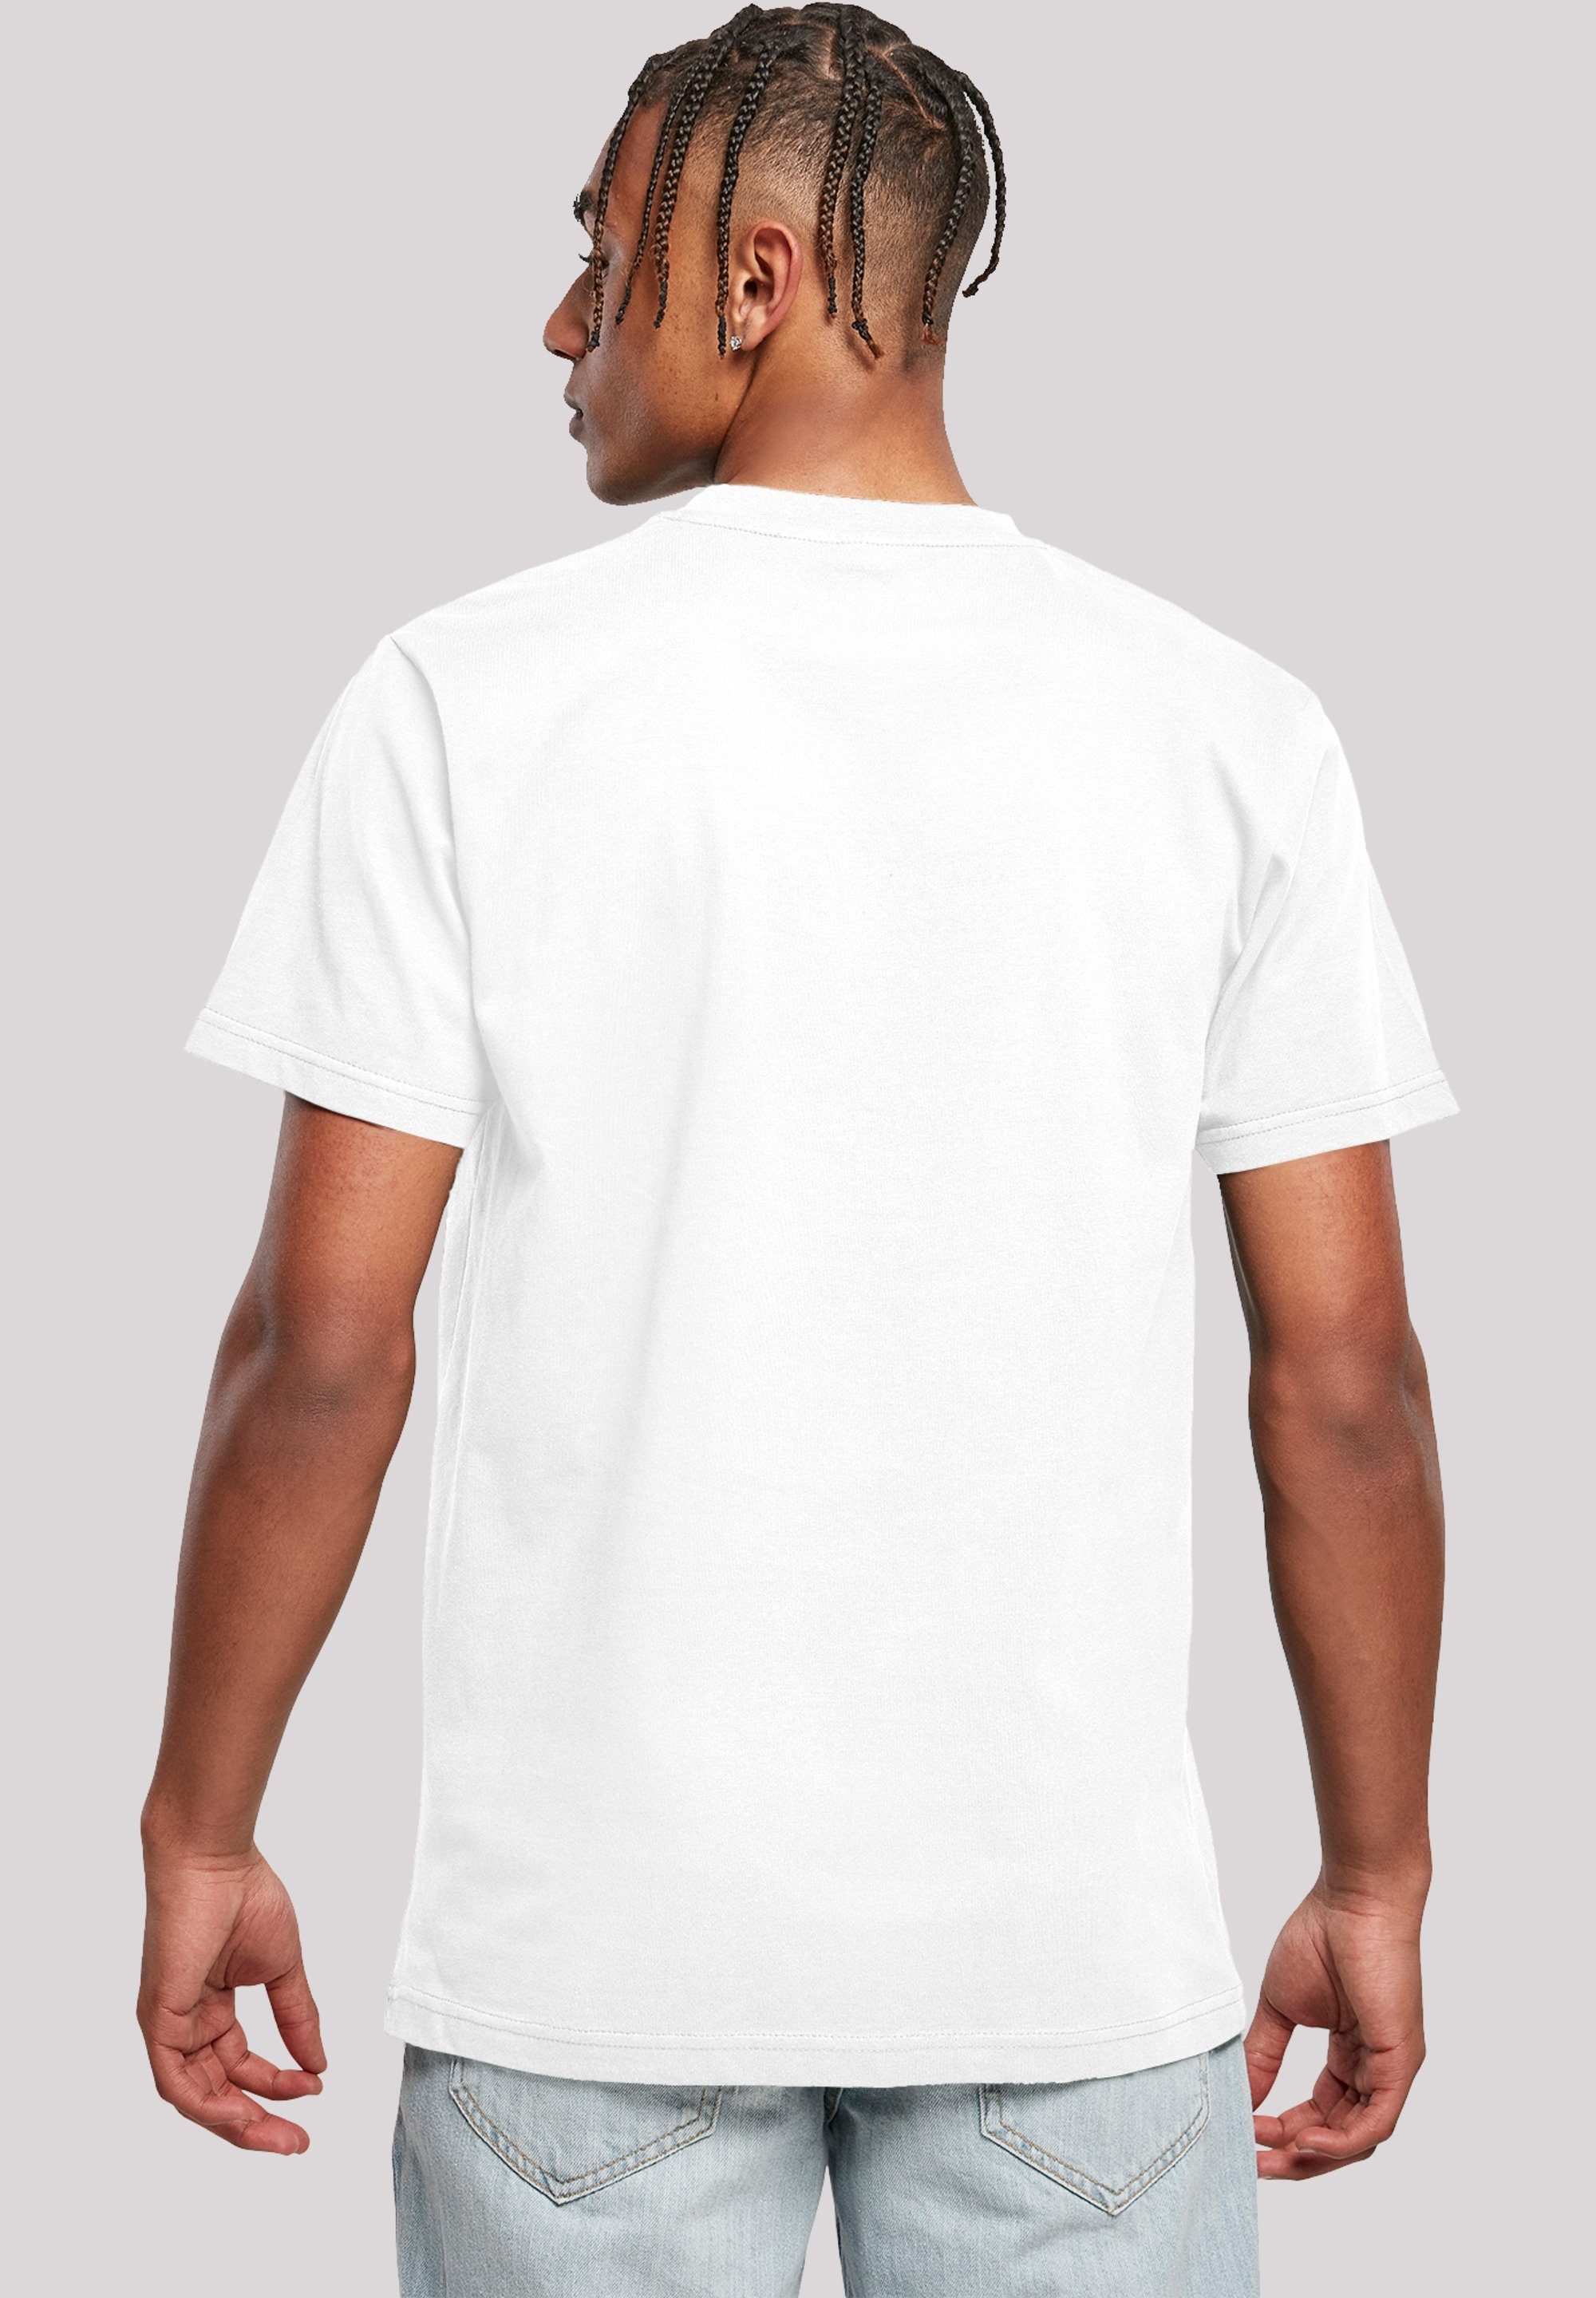 T-Shirt Herren,Premium Disney Bambi weiß Classic F4NT4STIC Merch,Regular-Fit,Basic,Bedruckt